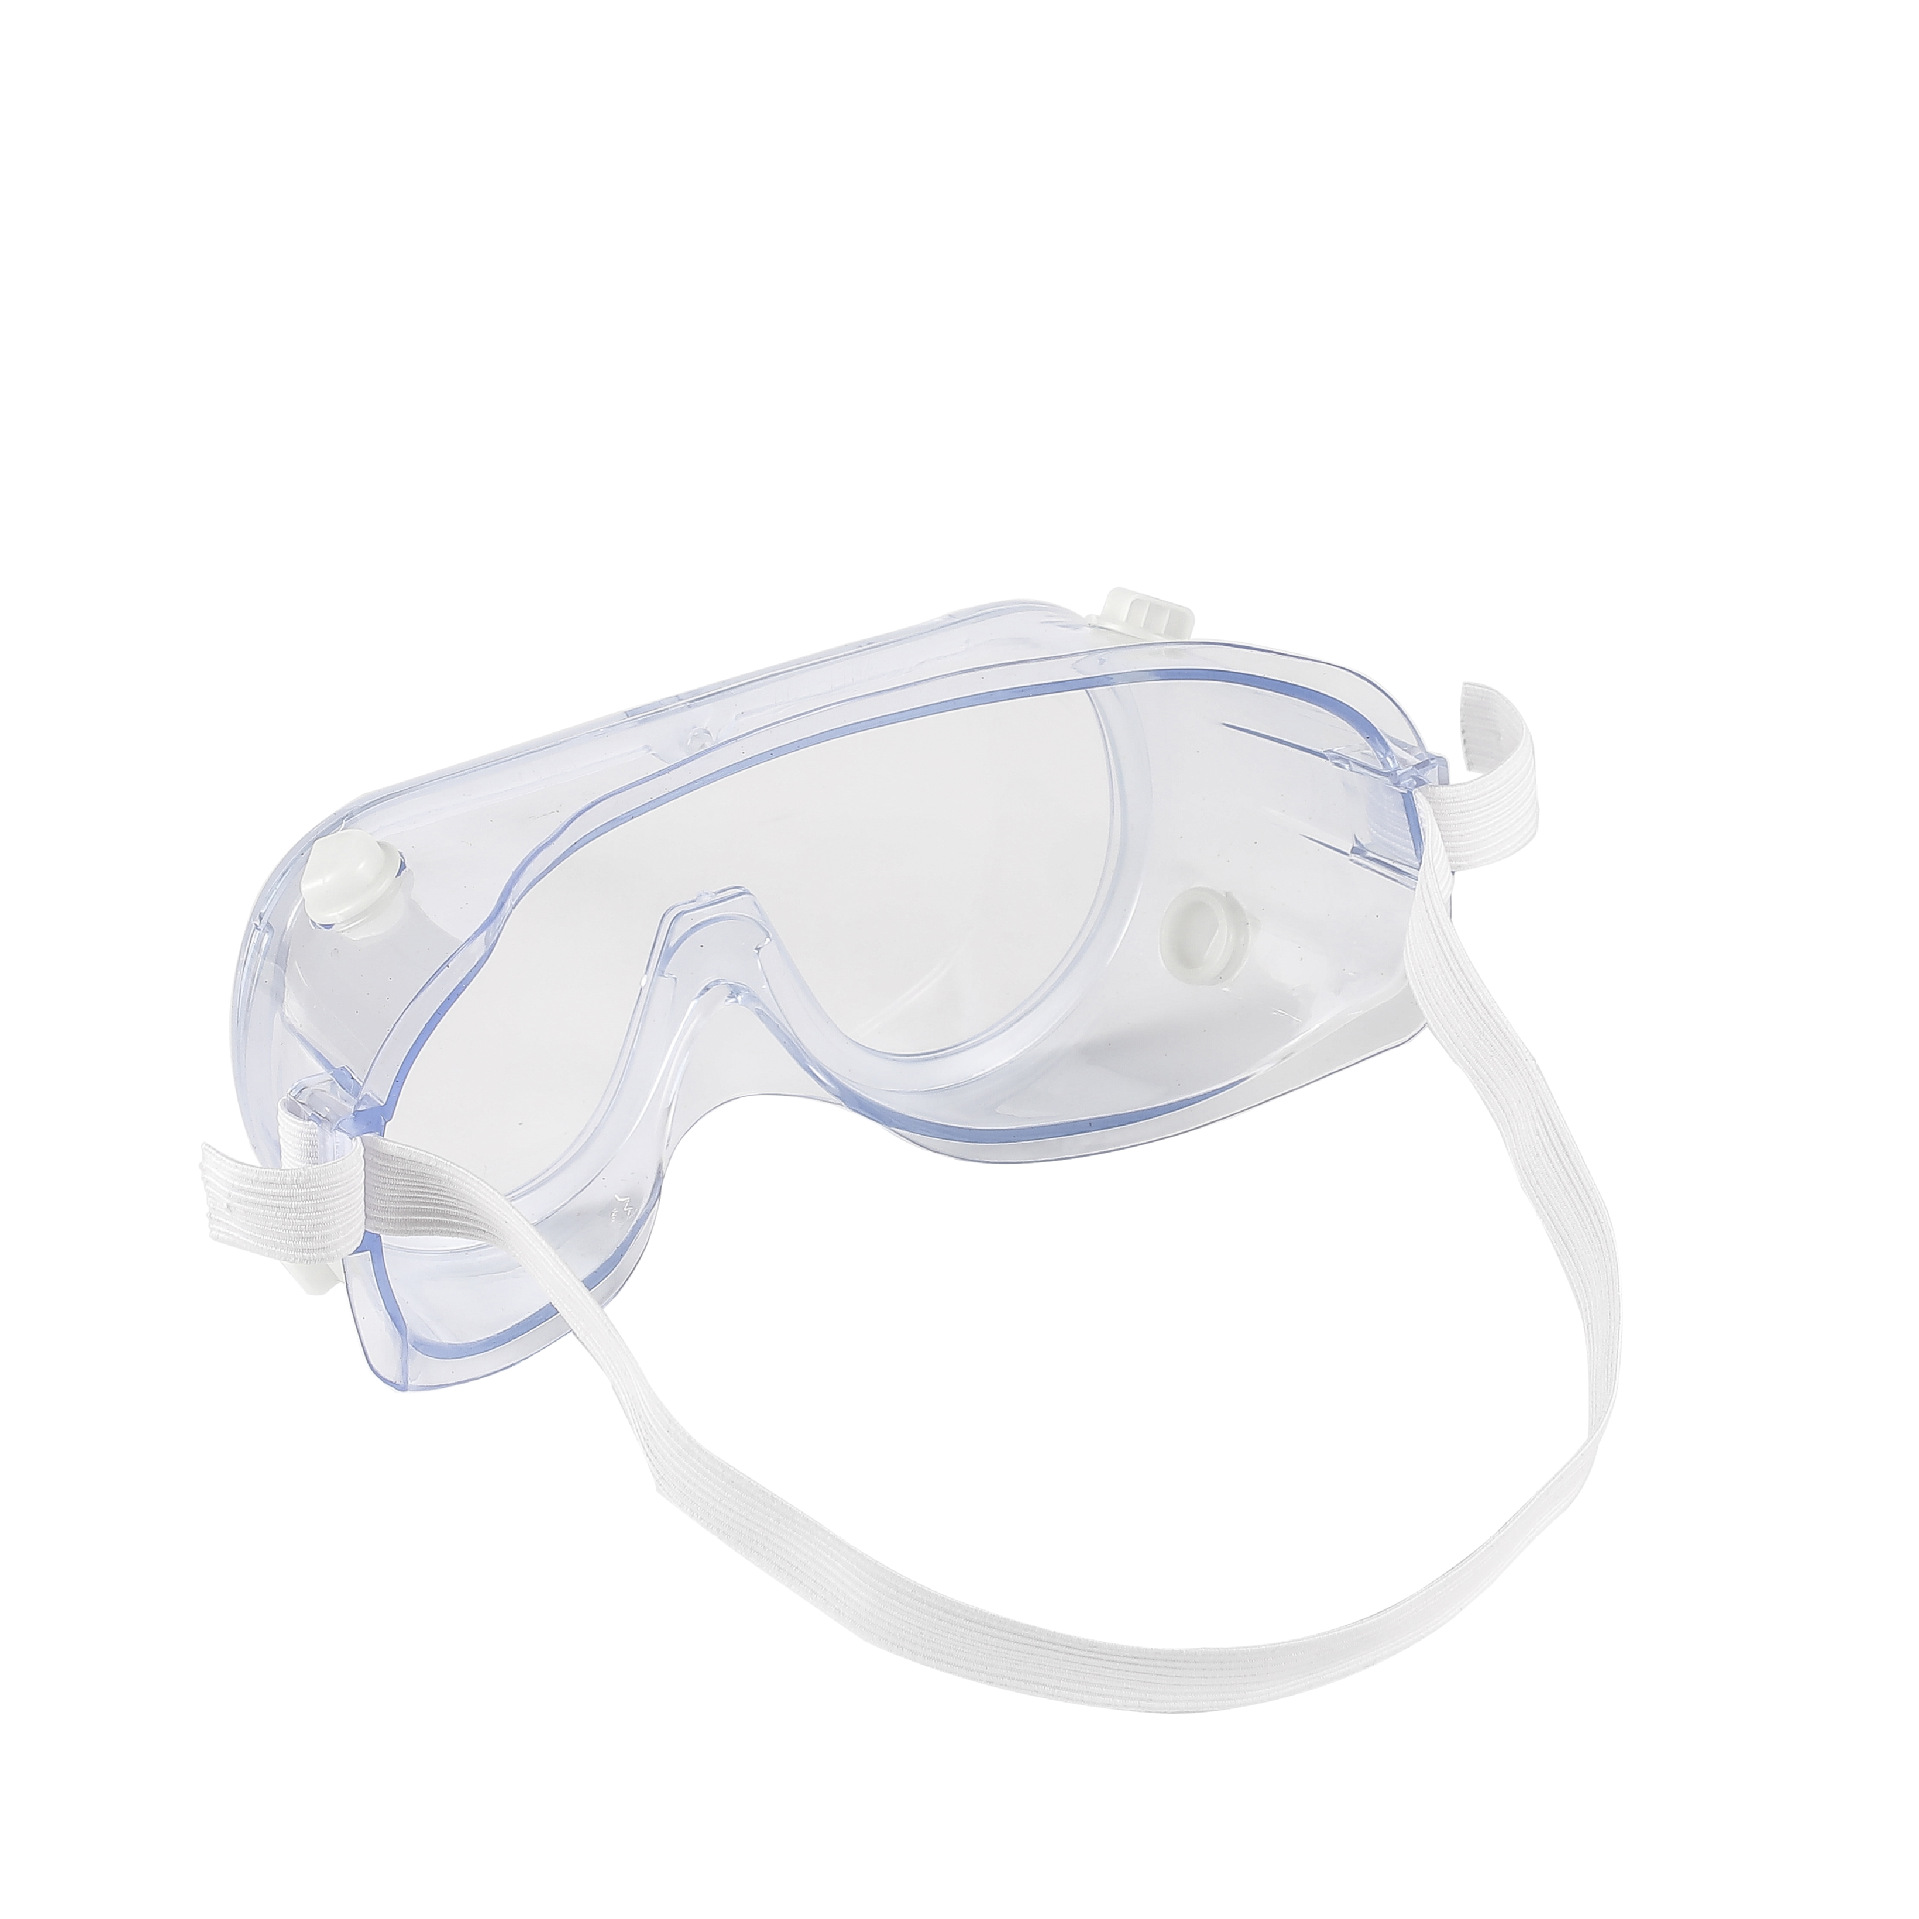 Nieuwe anti-condens pc-lens veiligheidsbril bril anti-shock anti-spat werkende rijbril winddicht anti-uv-veiligheidsbril